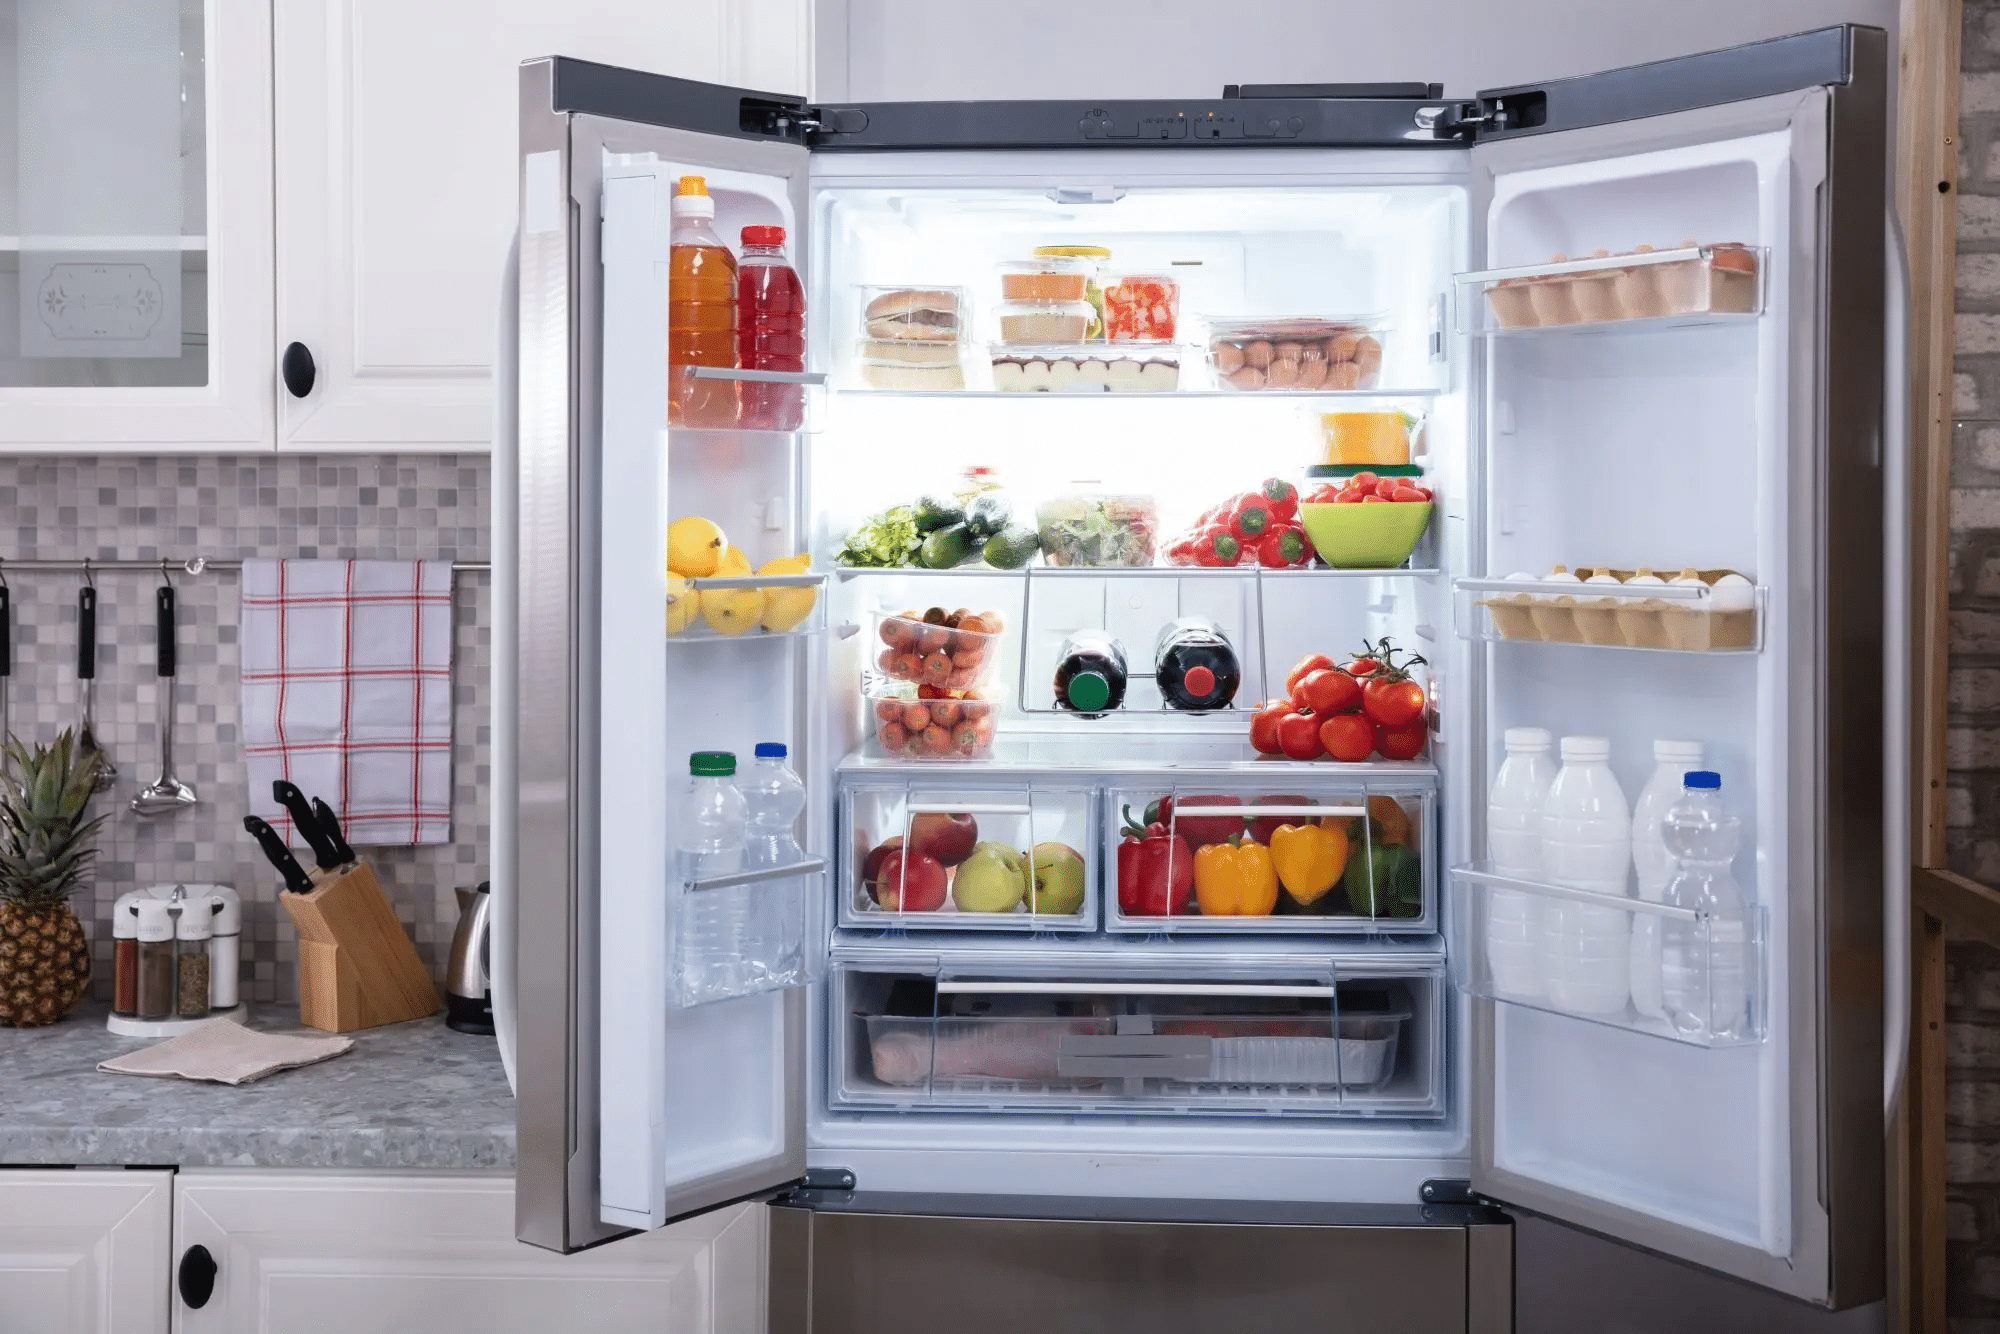 Aprenda como evitar esse equívoco e manter seus alimentos frescos na geladeira. Proteja sua saúde e economize energia seguindo essas dicas!